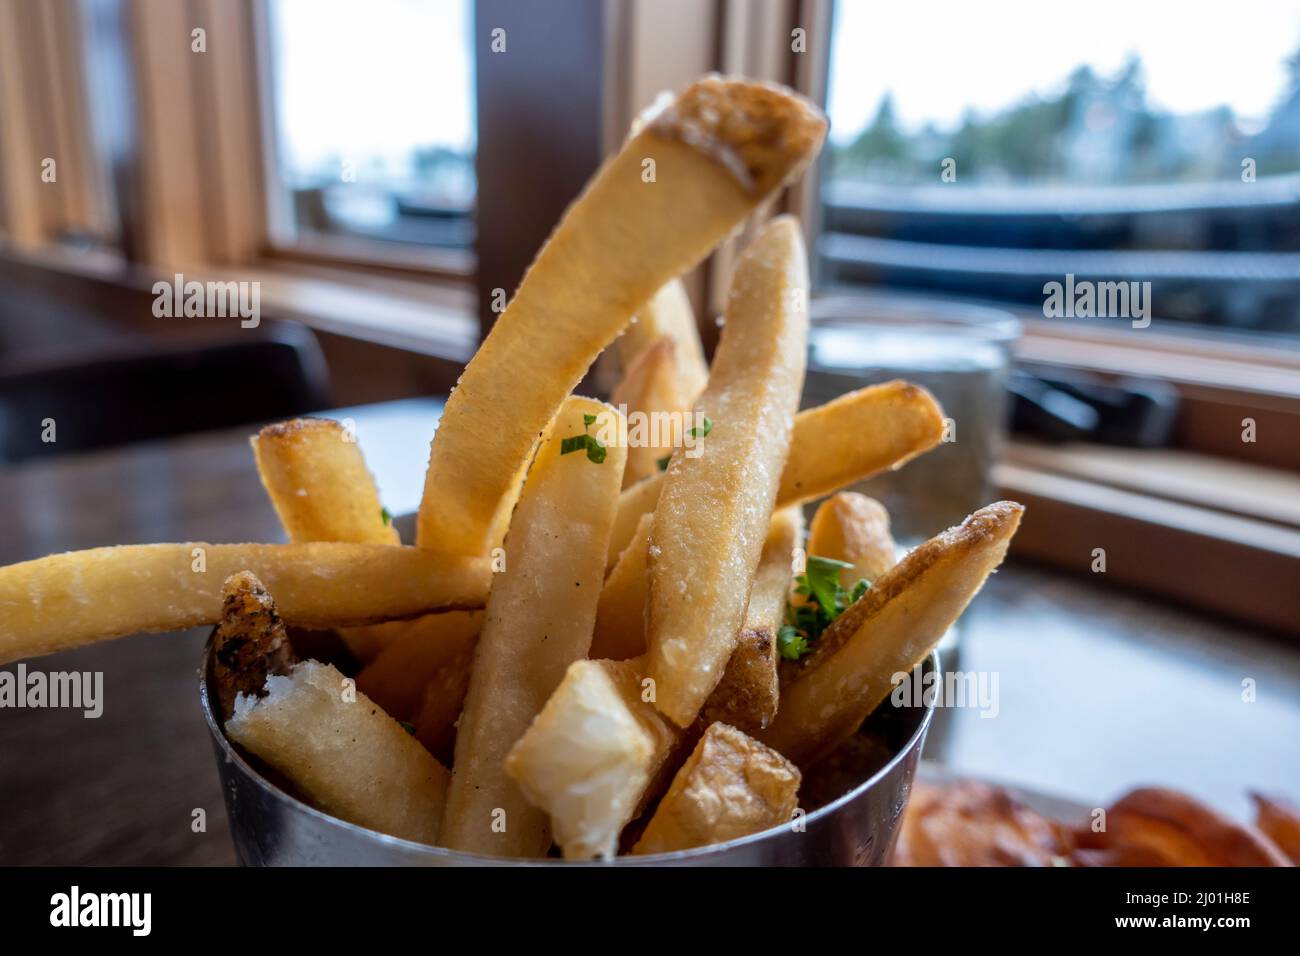 Primo piano, macro focus selettivo su patatine fritte croccanti con soffici centri di patate, presentato all'interno di una tazza di metallo in un ristorante interno Foto Stock